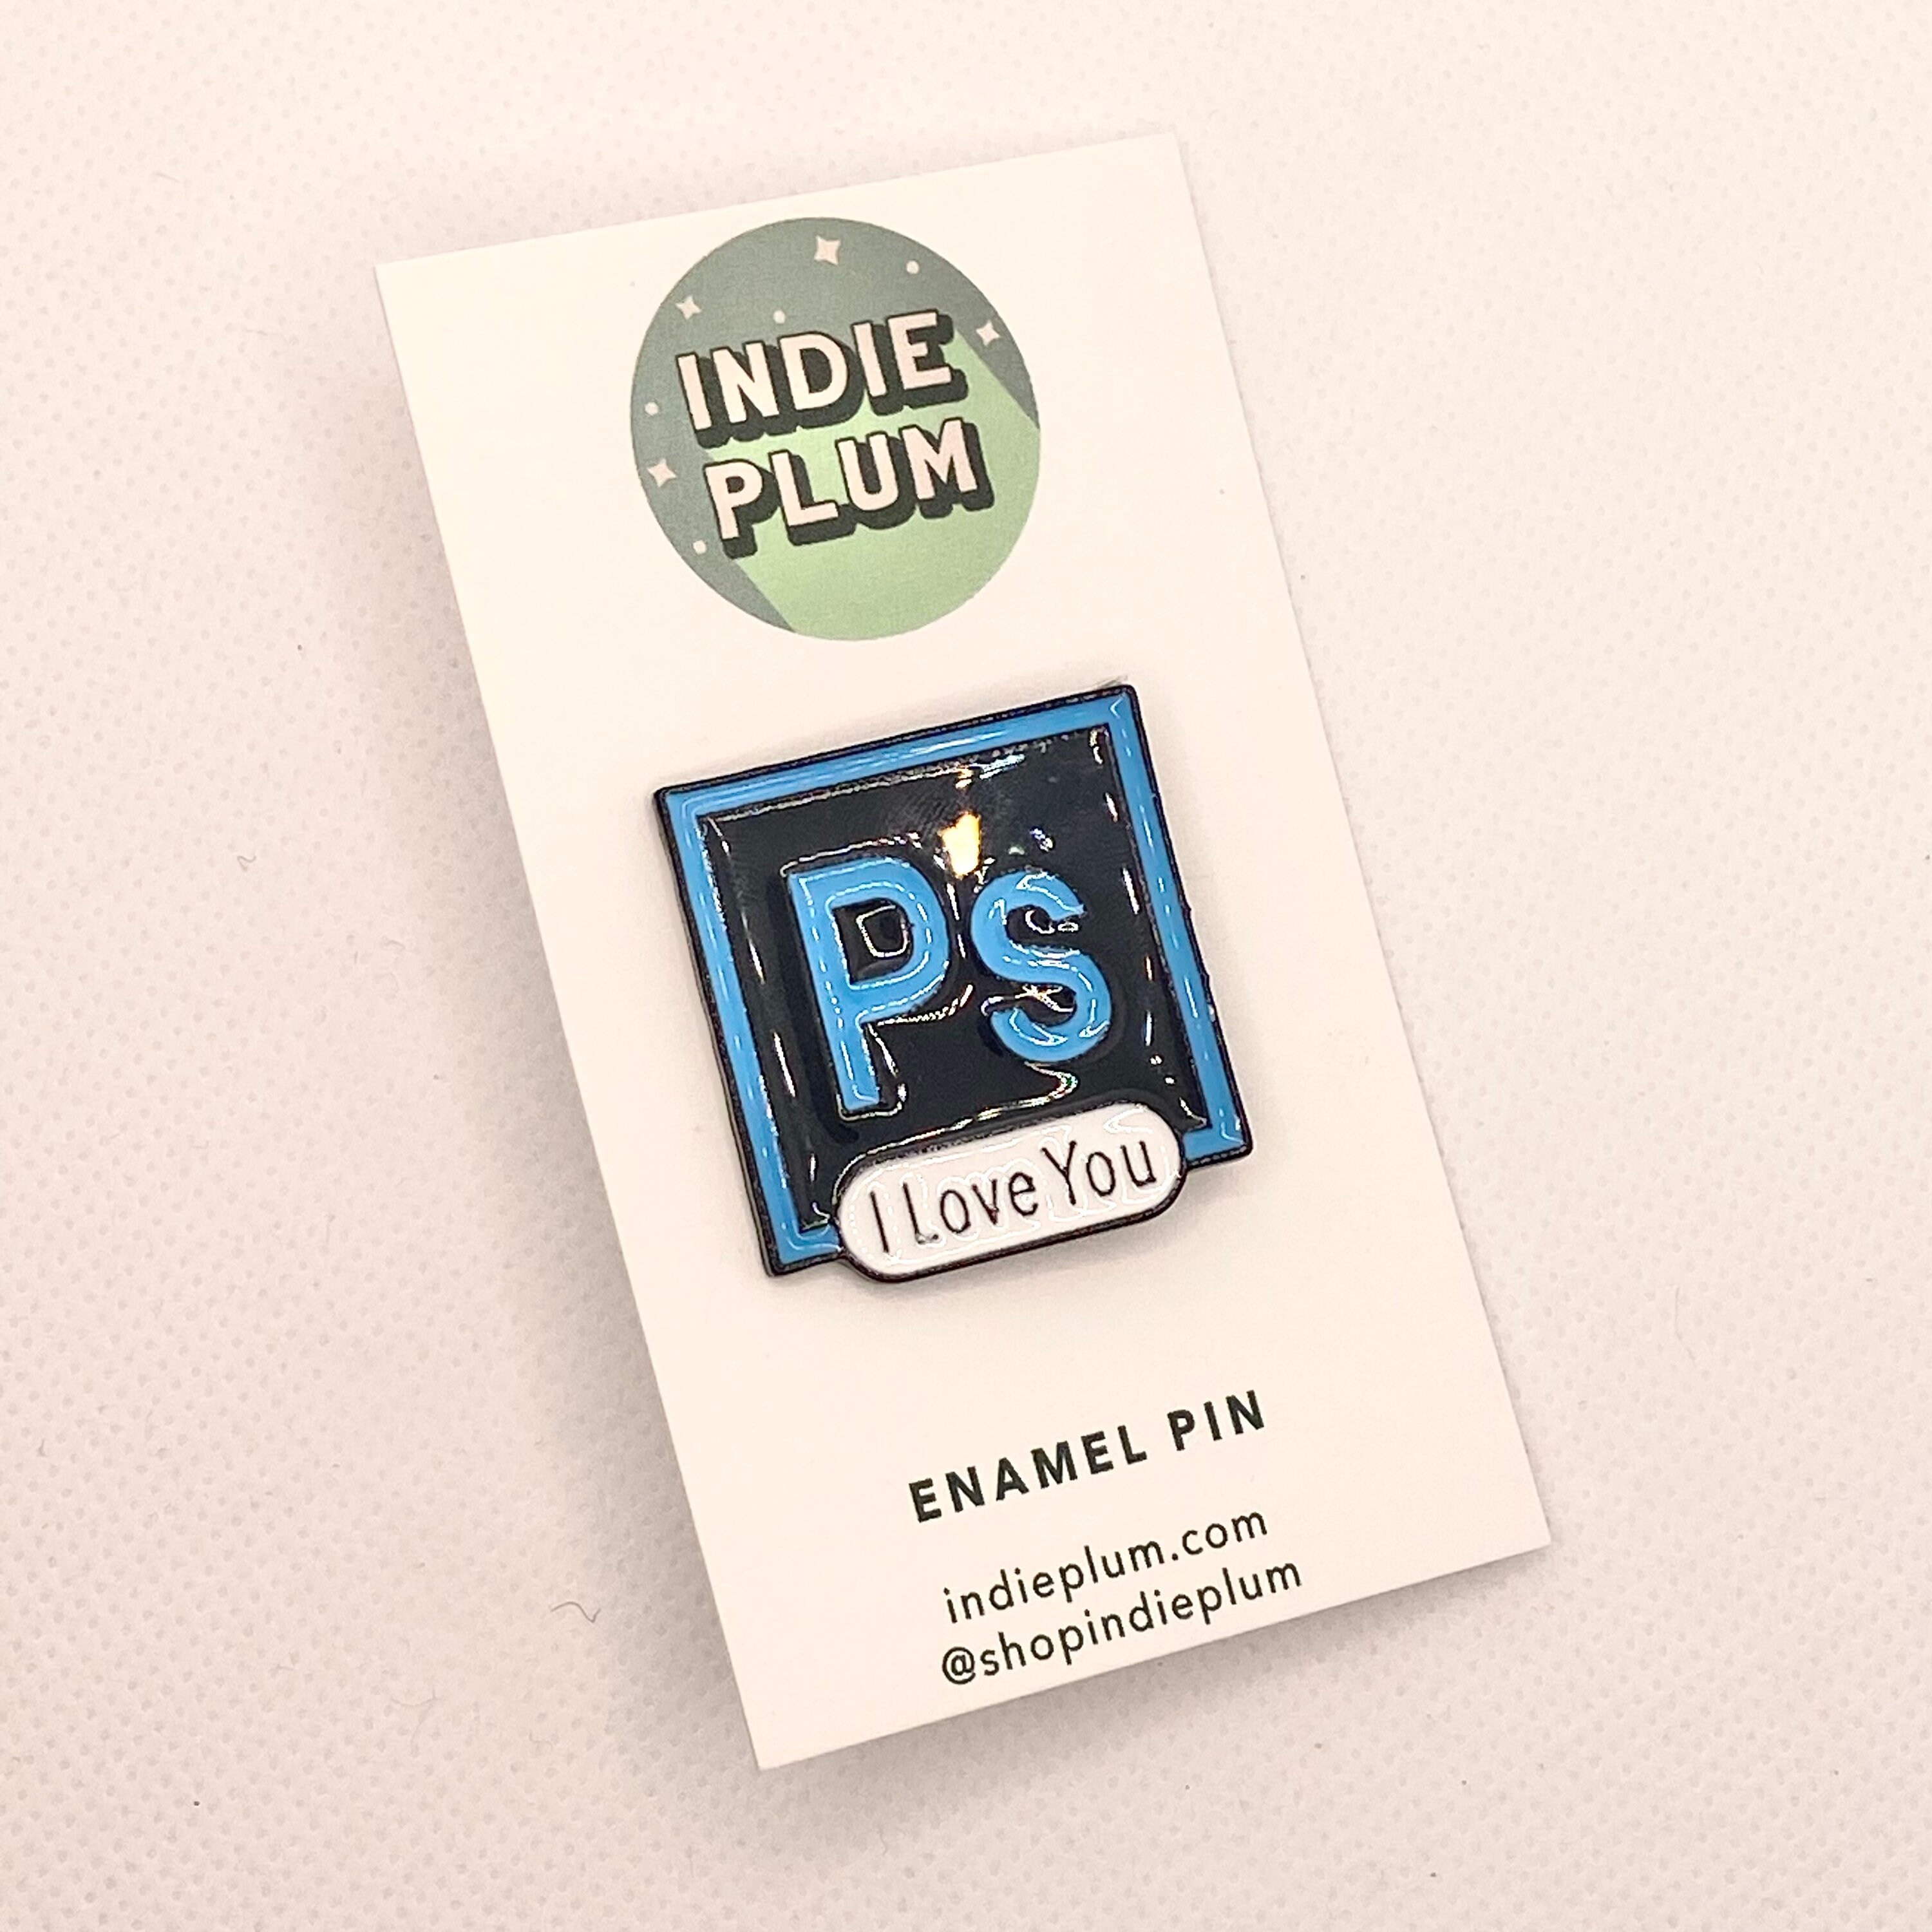 Pin Pals – Adobe Photoshop Enamel Pin Badge Creator